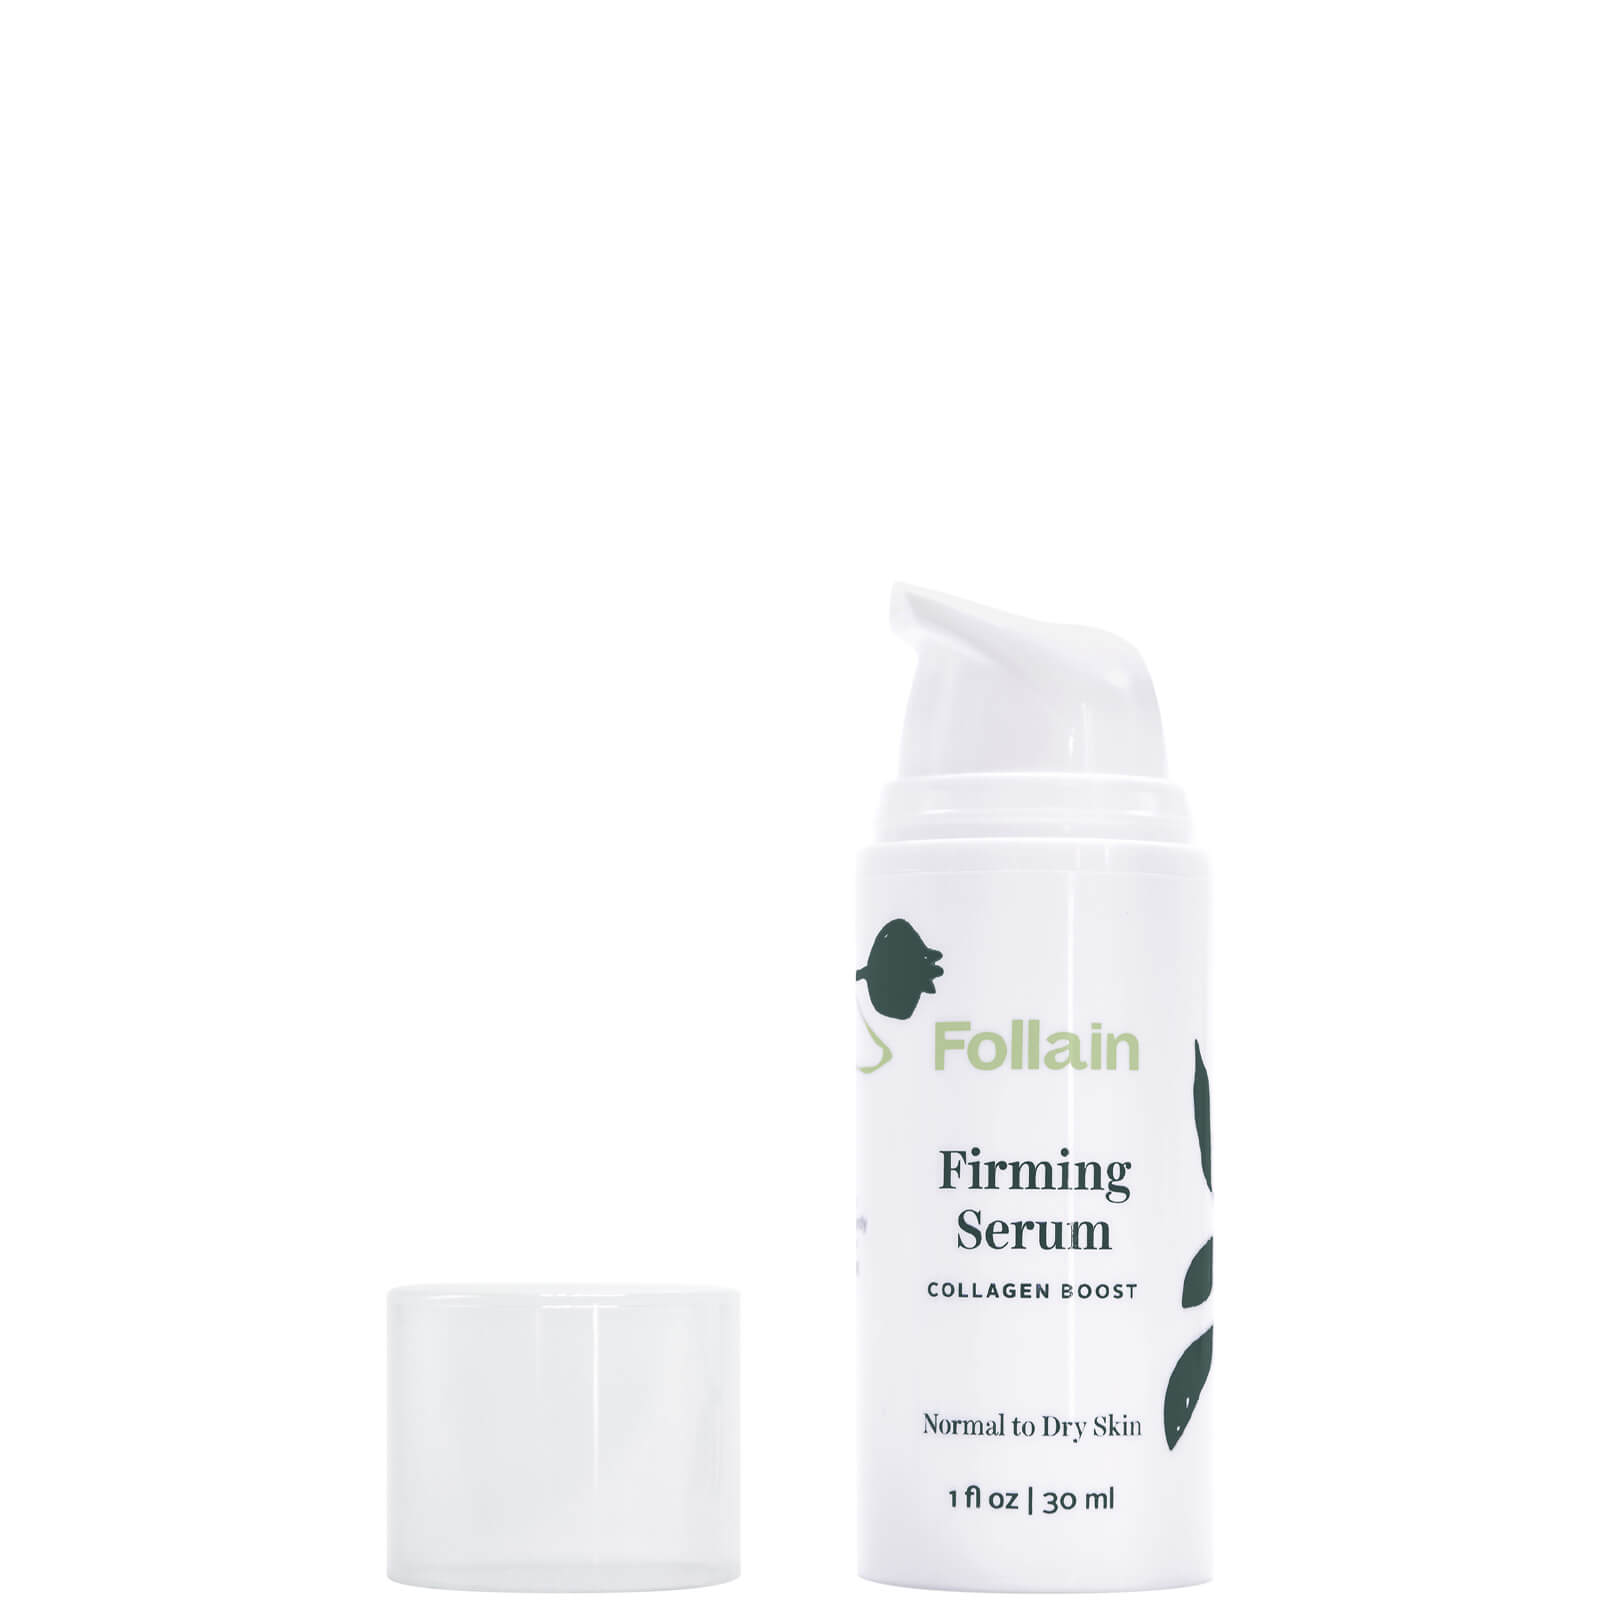 Follain Firming Serum Collagen Boost 1 Fl. oz